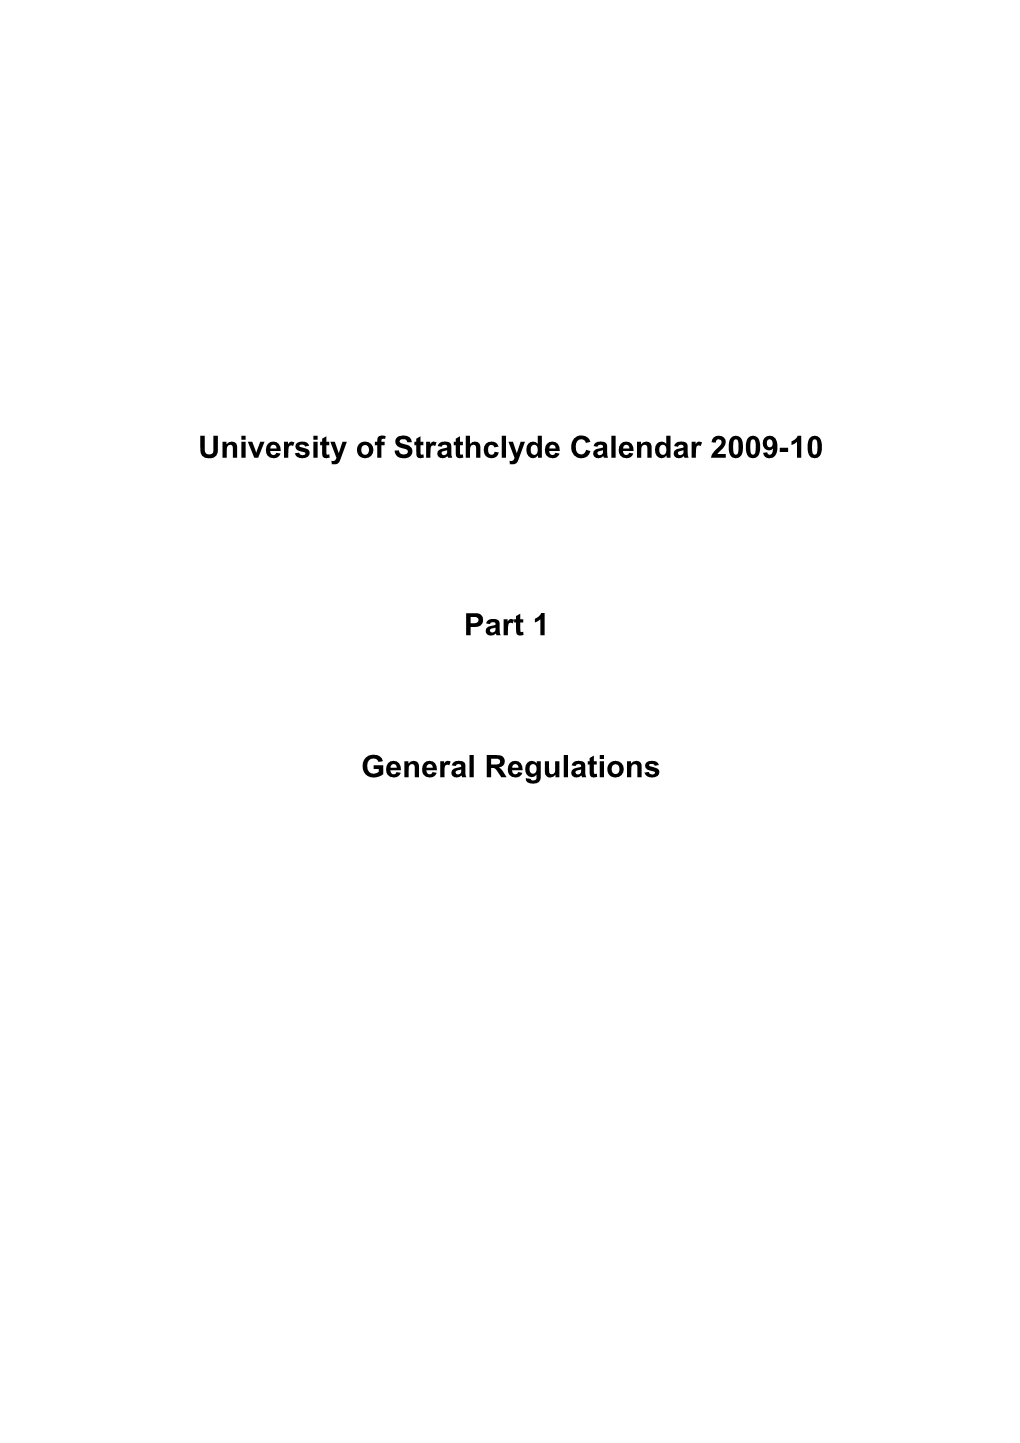 Universityof Strathclyde Calendar 2009-10